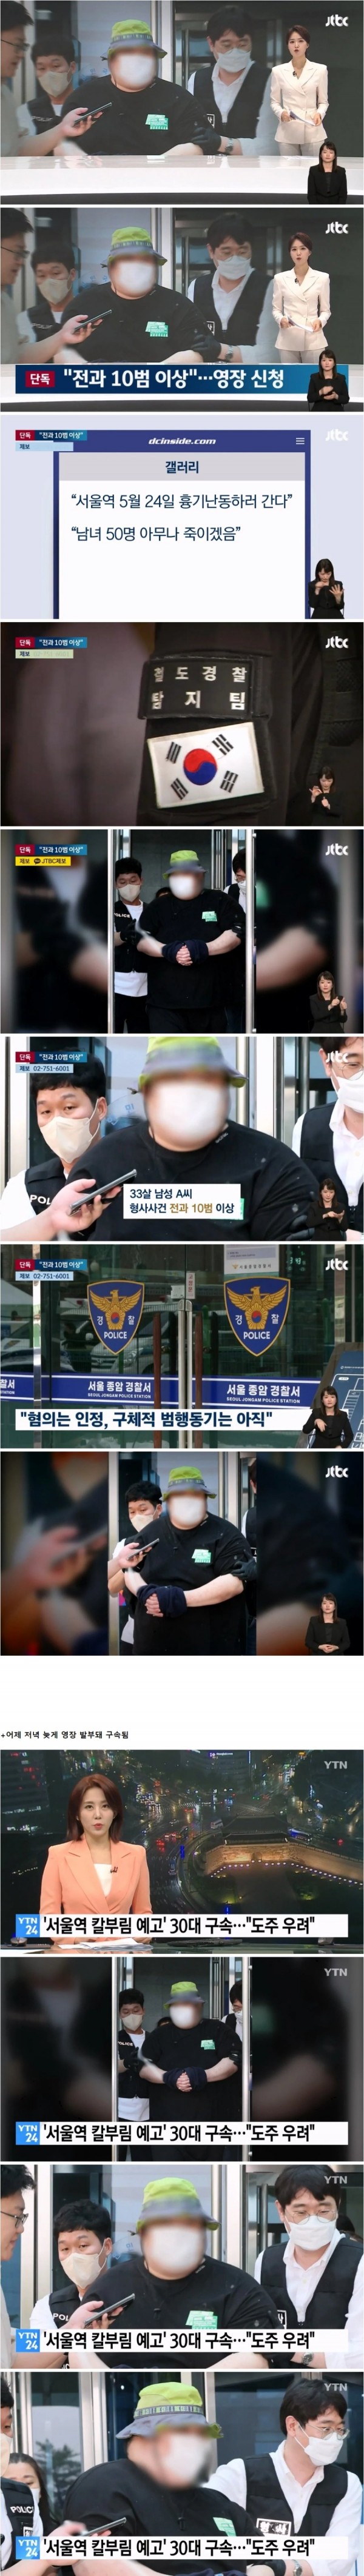 서울역 칼부림 예고글 올린 30대 디씨남.. 전과 10범이상